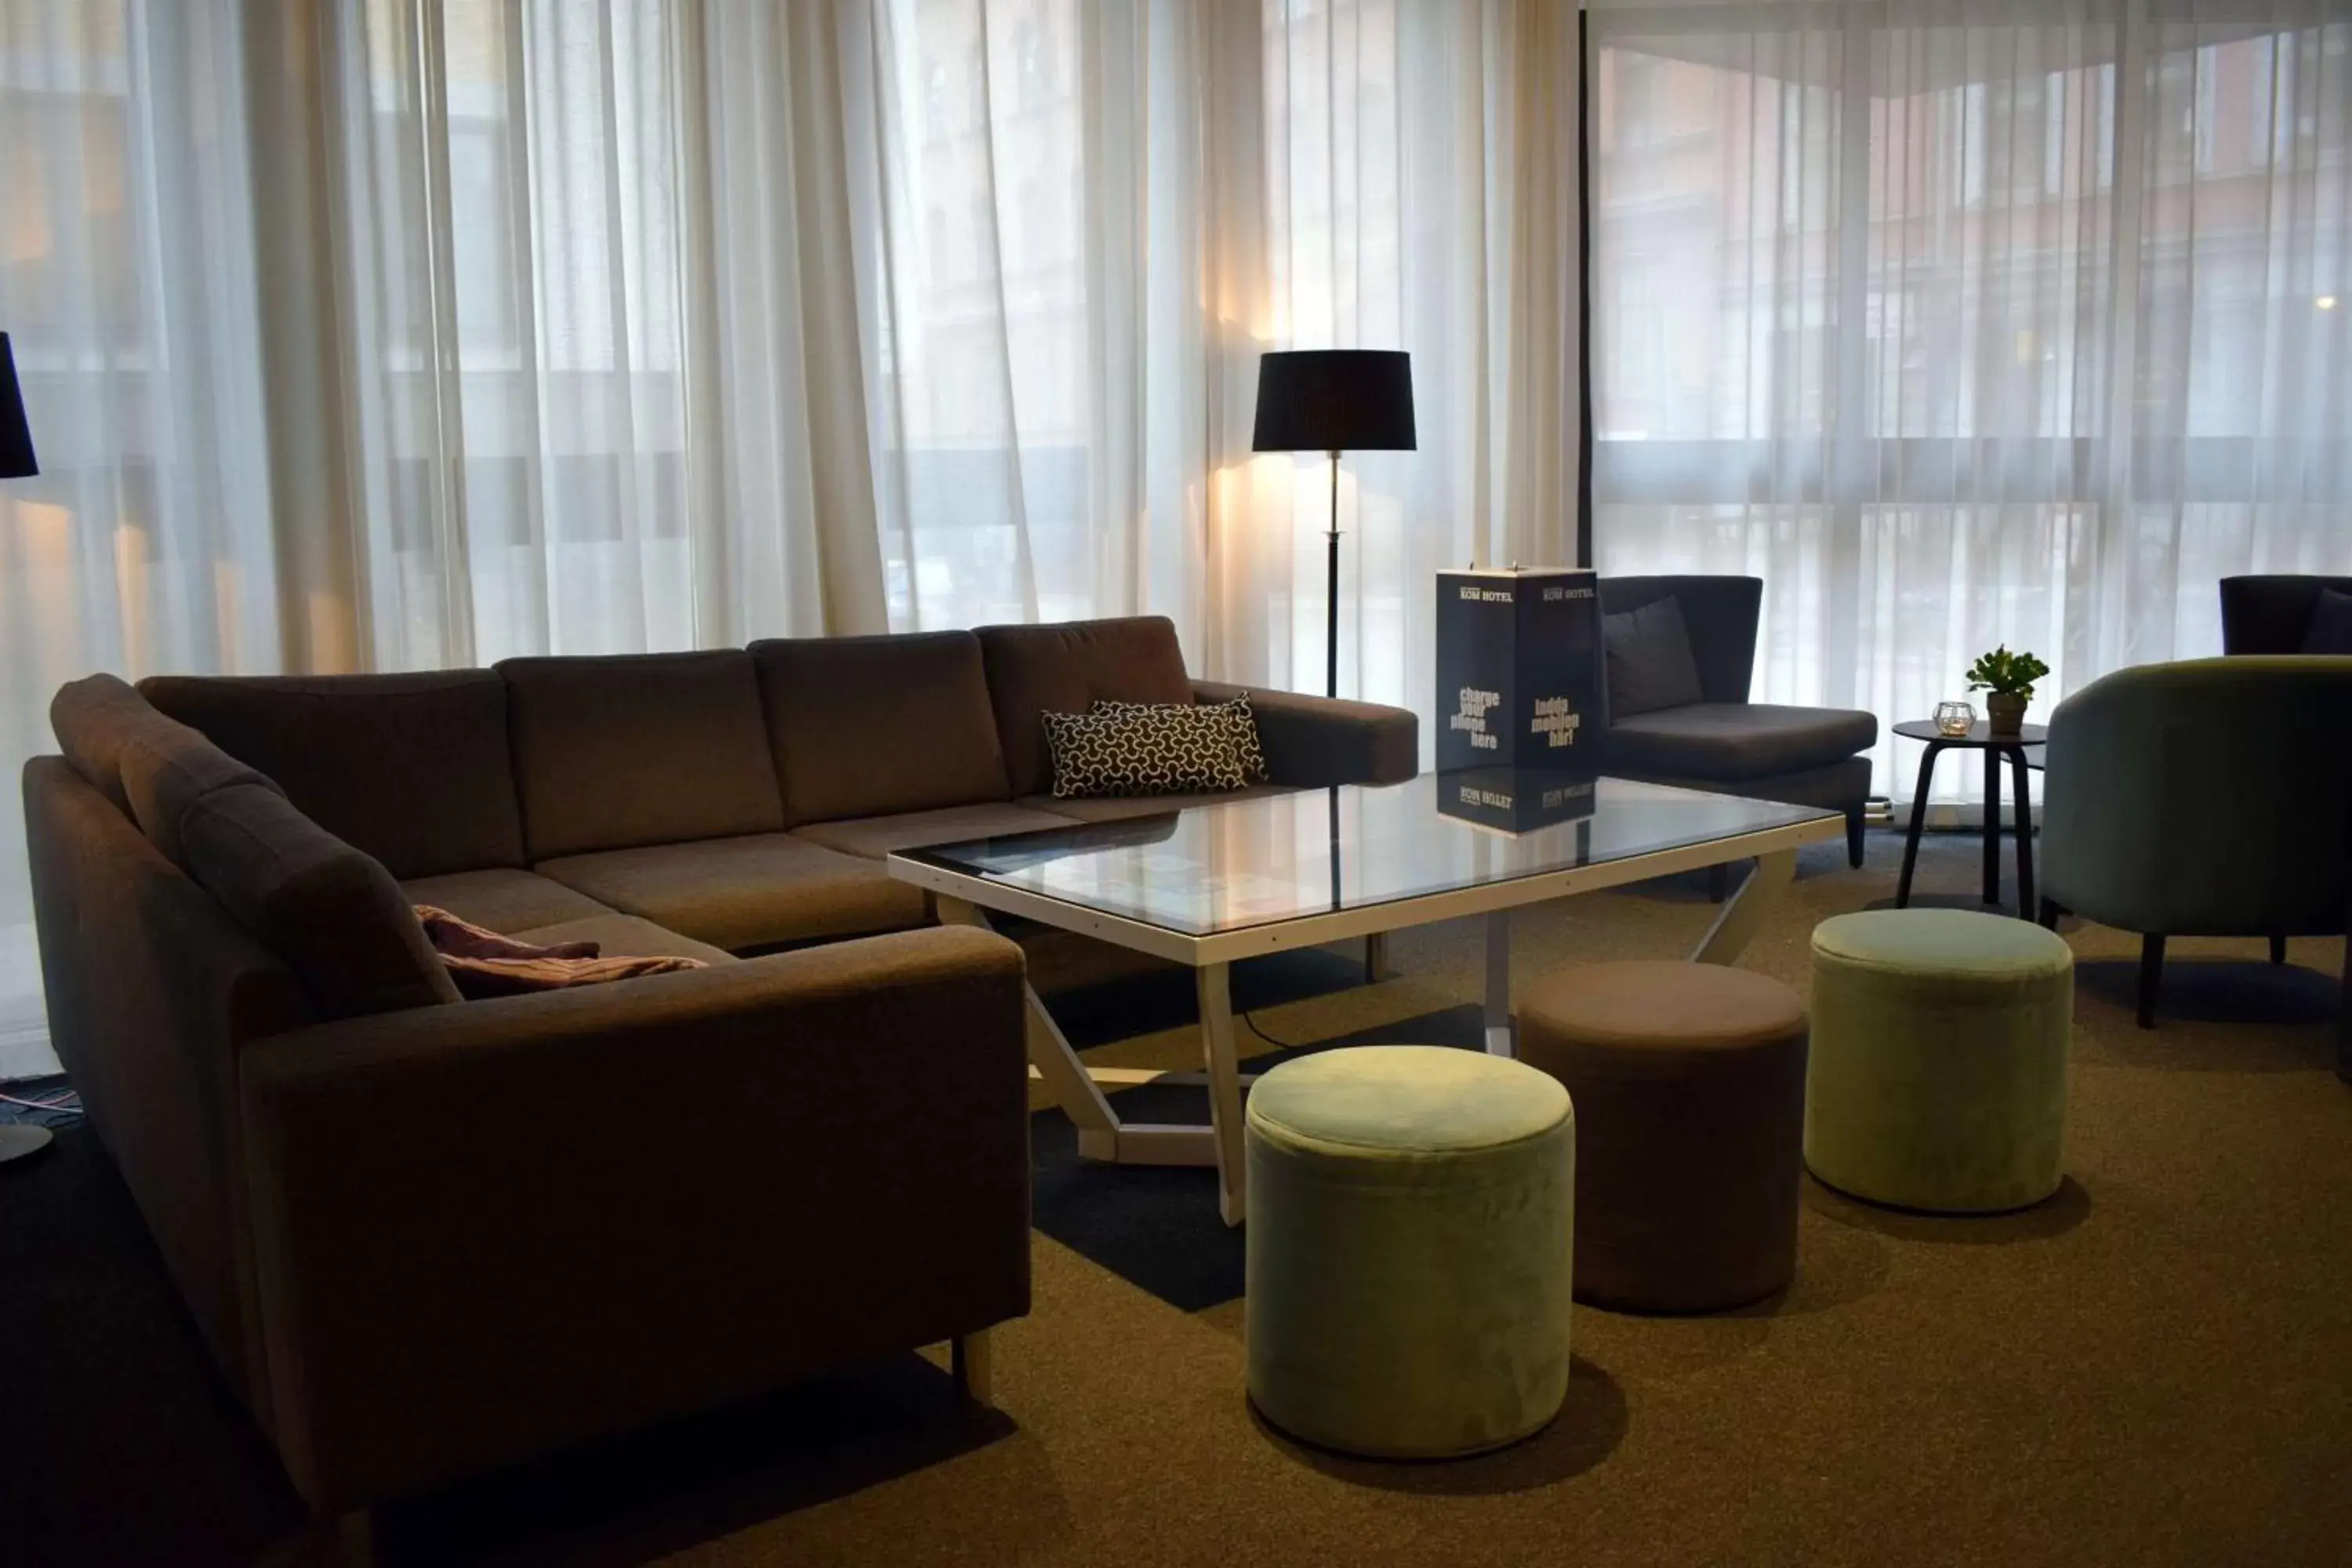 People, Seating Area in Best Western Kom Hotel Stockholm